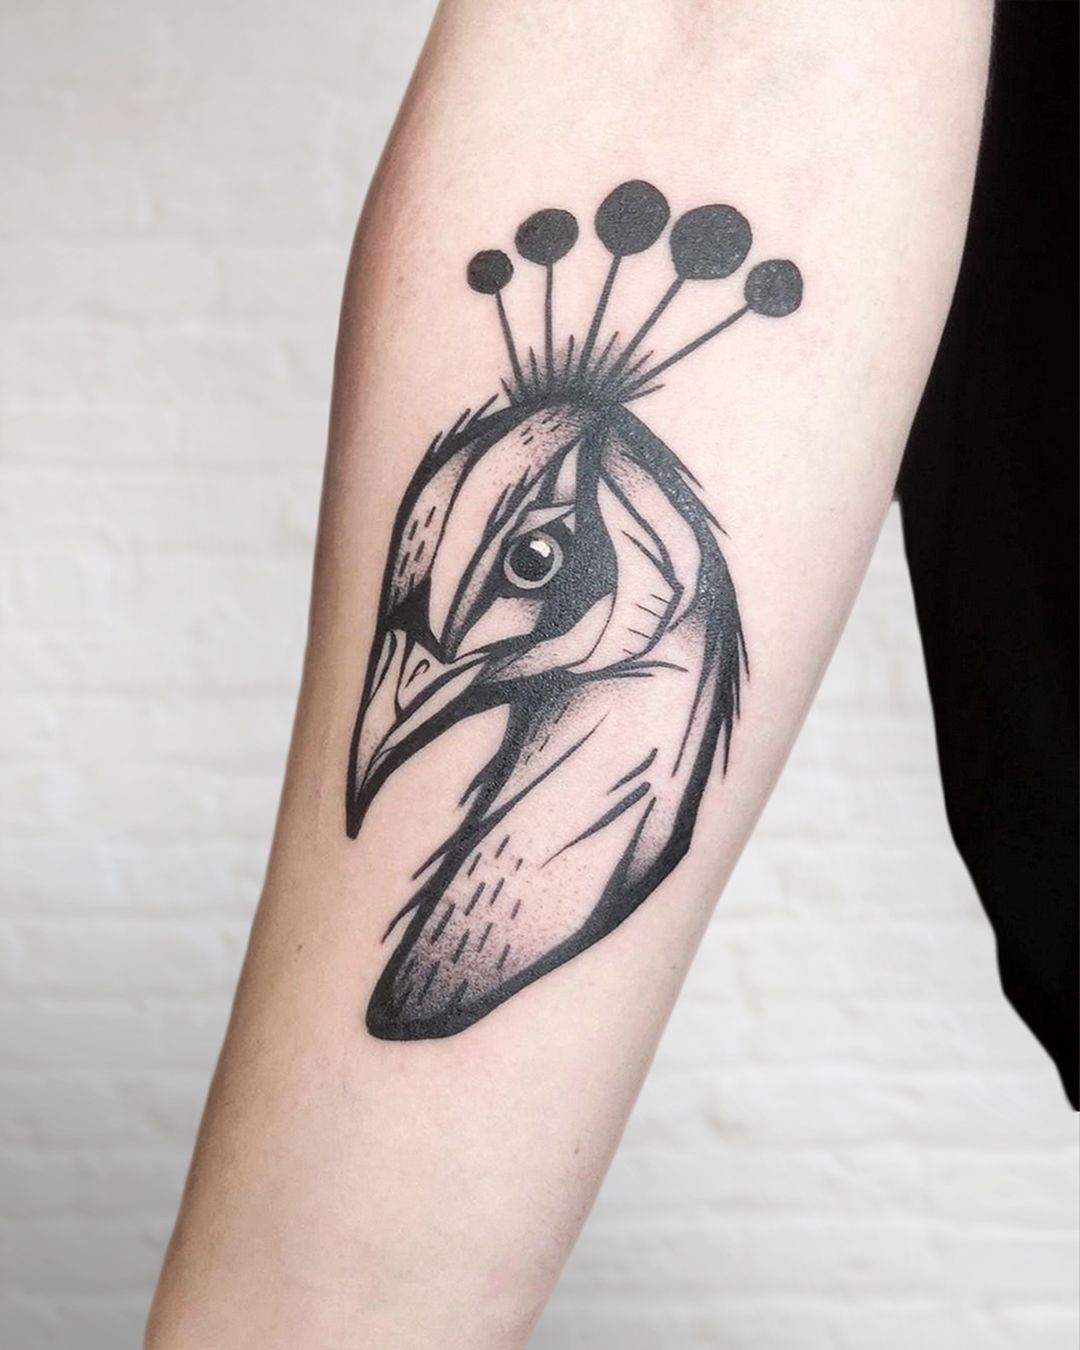 ArtStation - Traditional Peacock - Tattoo Inspired Illustration